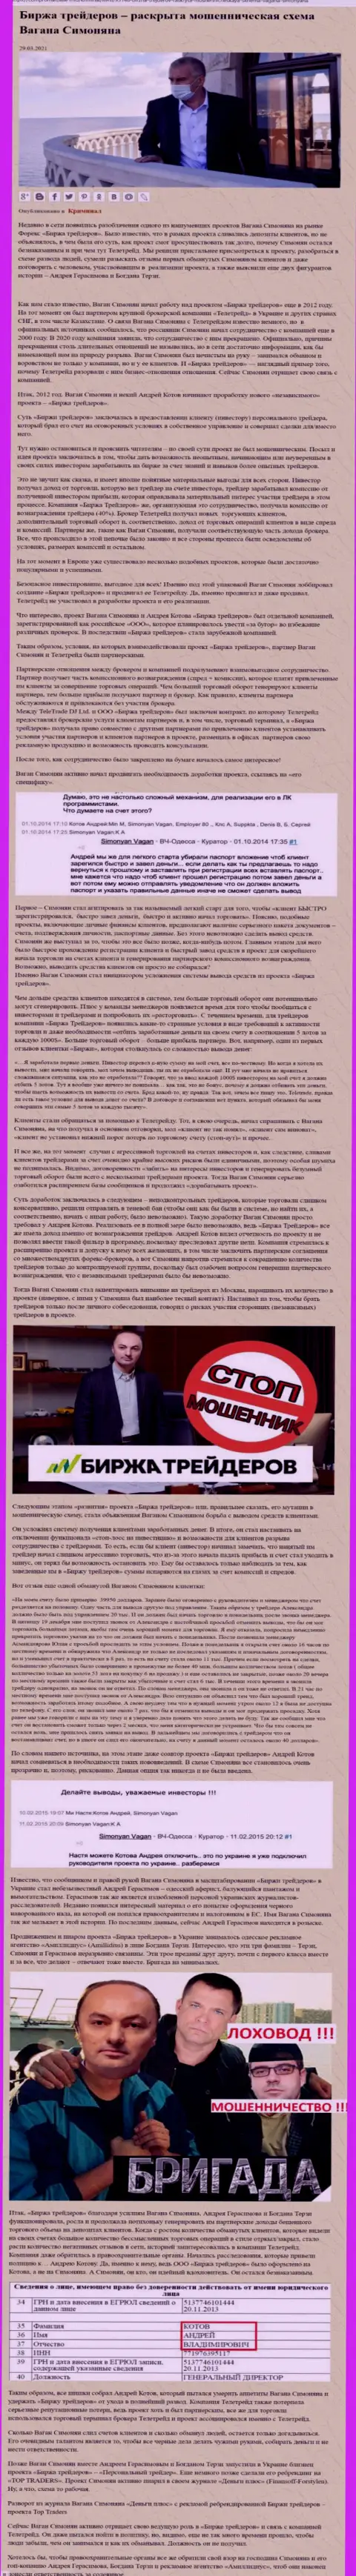 Пиаром фирмы Биржа Трейдеров, тесно связанной с мошенниками TeleTrade, тоже занимался Богдан Терзи